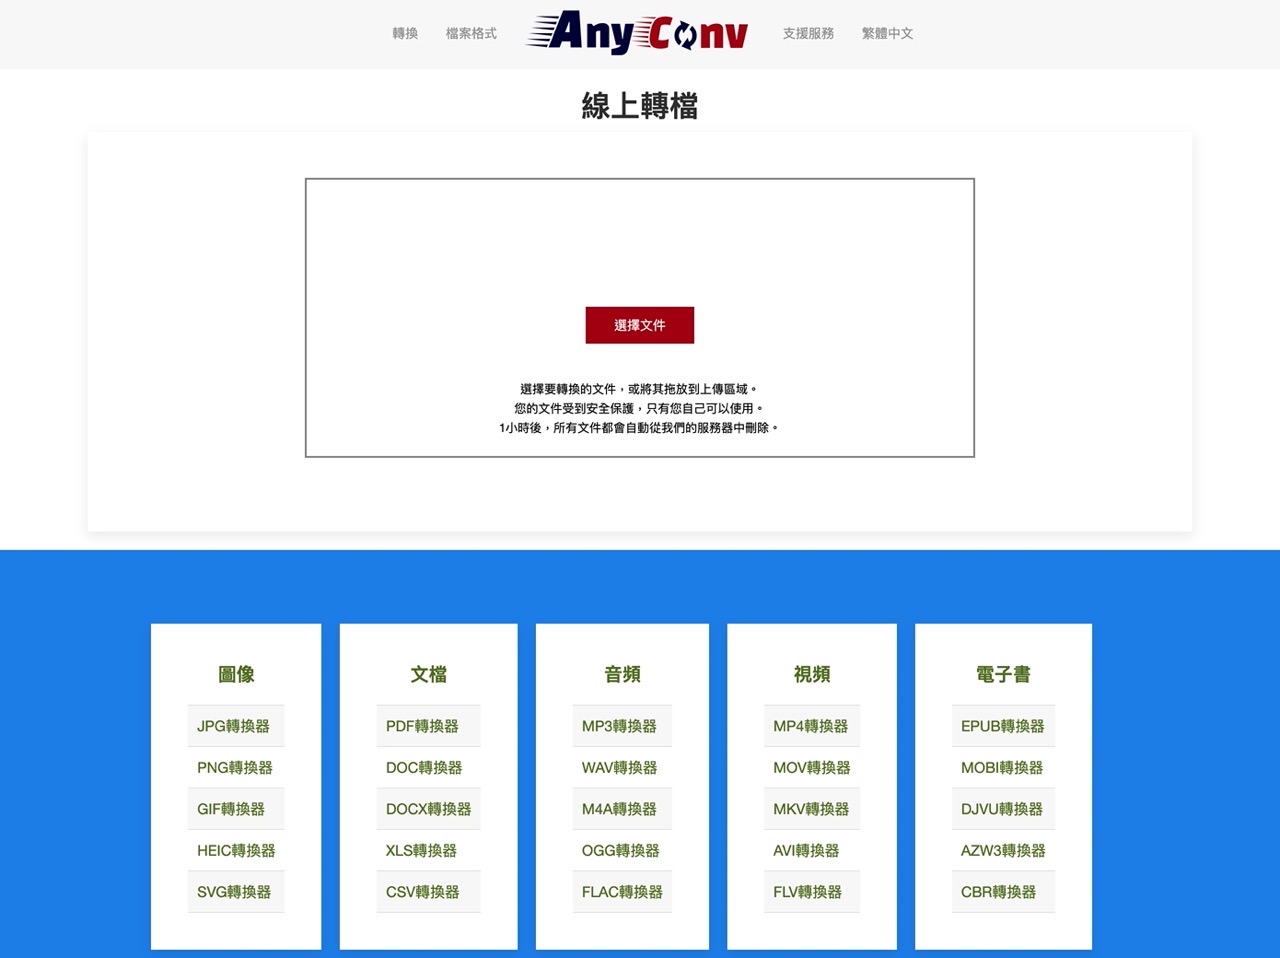 AnyConv 免費線上轉檔圖片、文件、音訊、影片和電子書支援 400 種格式